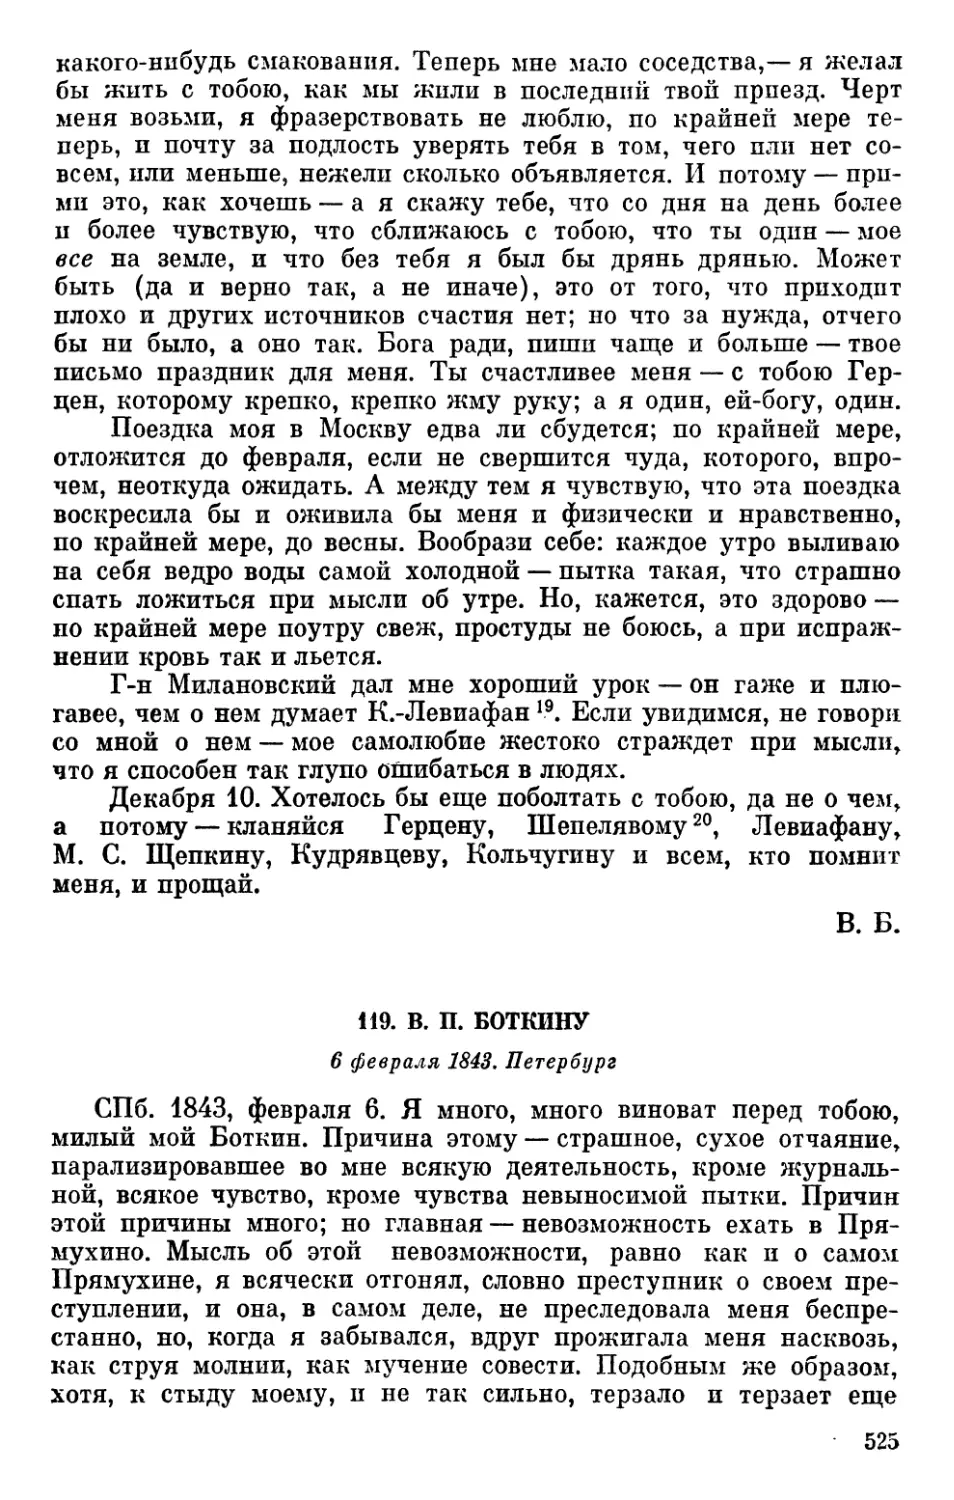 119. В. П. Боткину. 6 февраля 1843